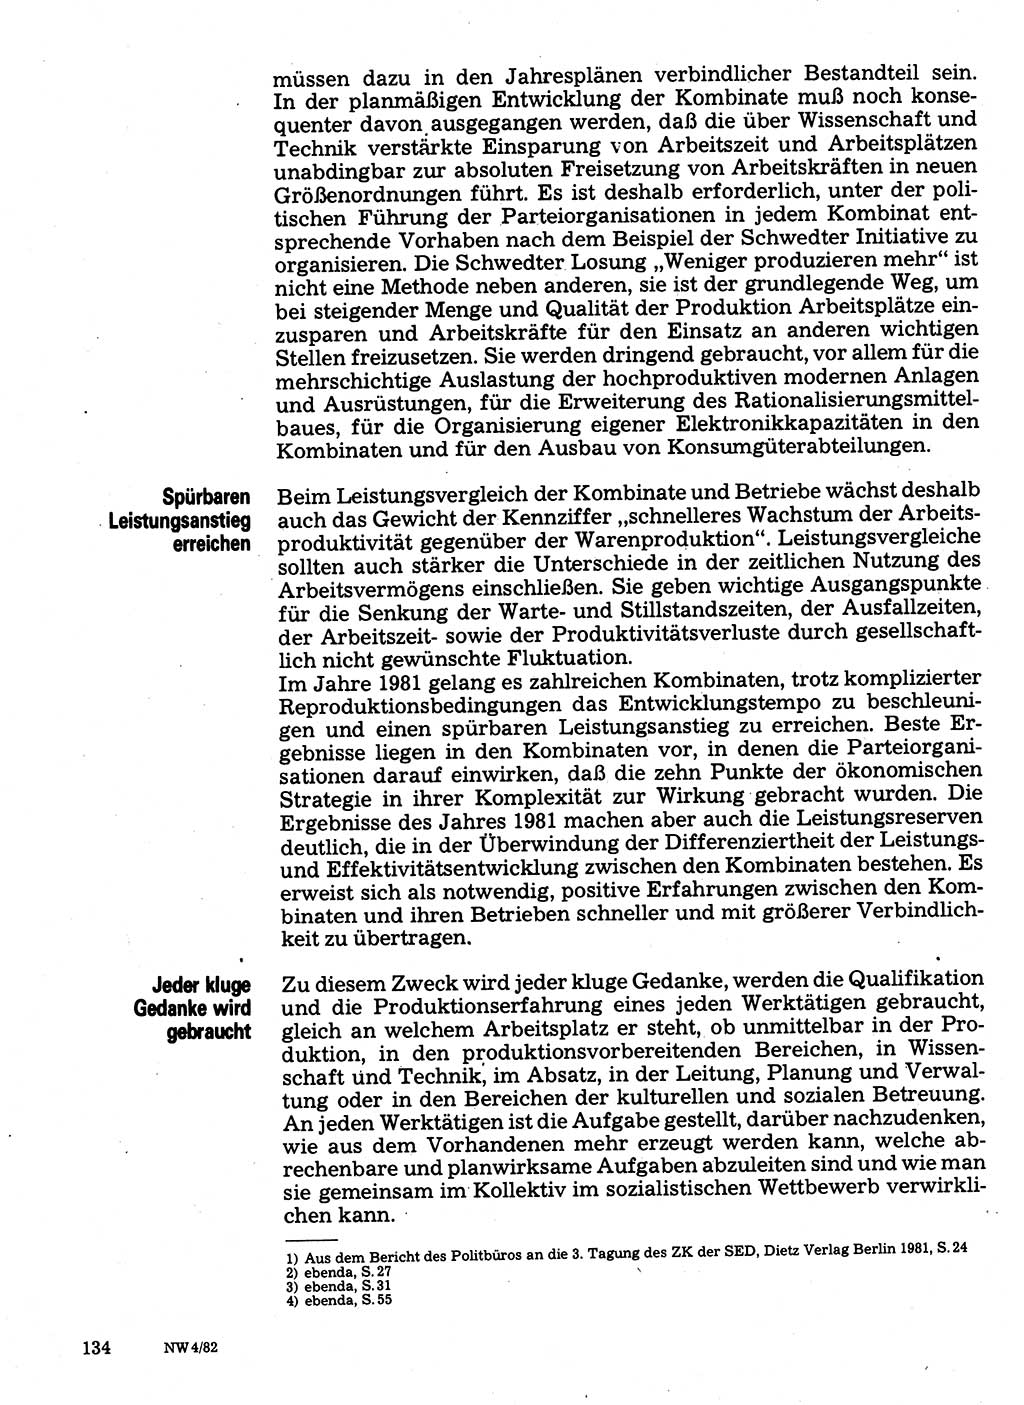 Neuer Weg (NW), Organ des Zentralkomitees (ZK) der SED (Sozialistische Einheitspartei Deutschlands) für Fragen des Parteilebens, 37. Jahrgang [Deutsche Demokratische Republik (DDR)] 1982, Seite 134 (NW ZK SED DDR 1982, S. 134)